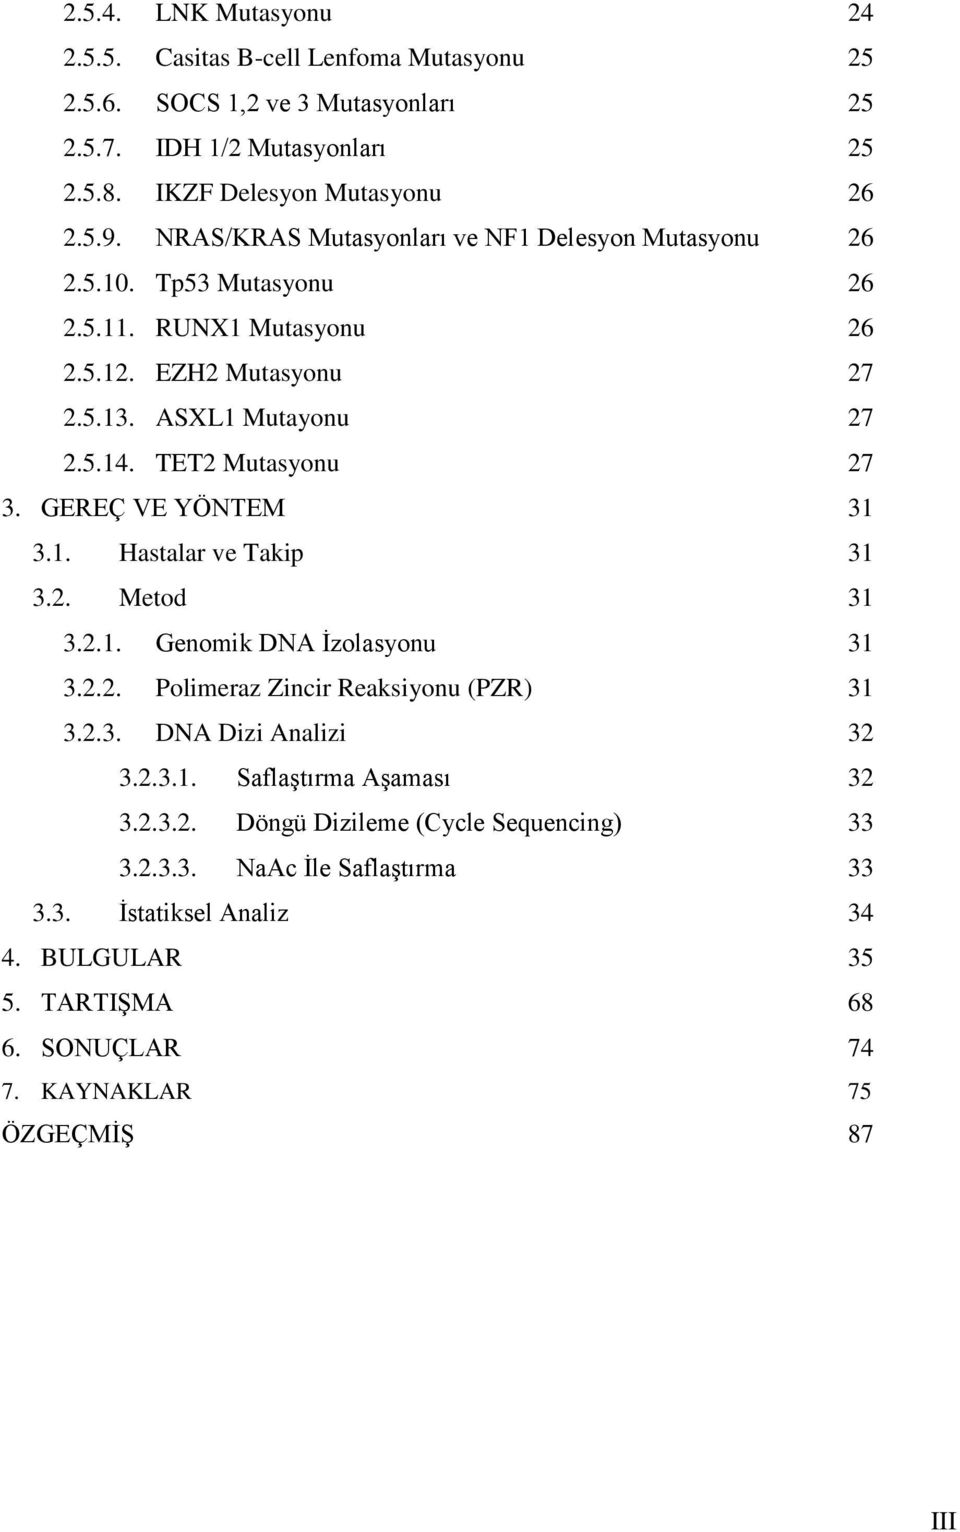 GEREÇ VE YÖNTEM 31 3.1. Hastalar ve Takip 31 3.2. Metod 31 3.2.1. Genomik DNA İzolasyonu 31 3.2.2. Polimeraz Zincir Reaksiyonu (PZR) 31 3.2.3. DNA Dizi Analizi 32 3.2.3.1. Saflaştırma Aşaması 32 3.